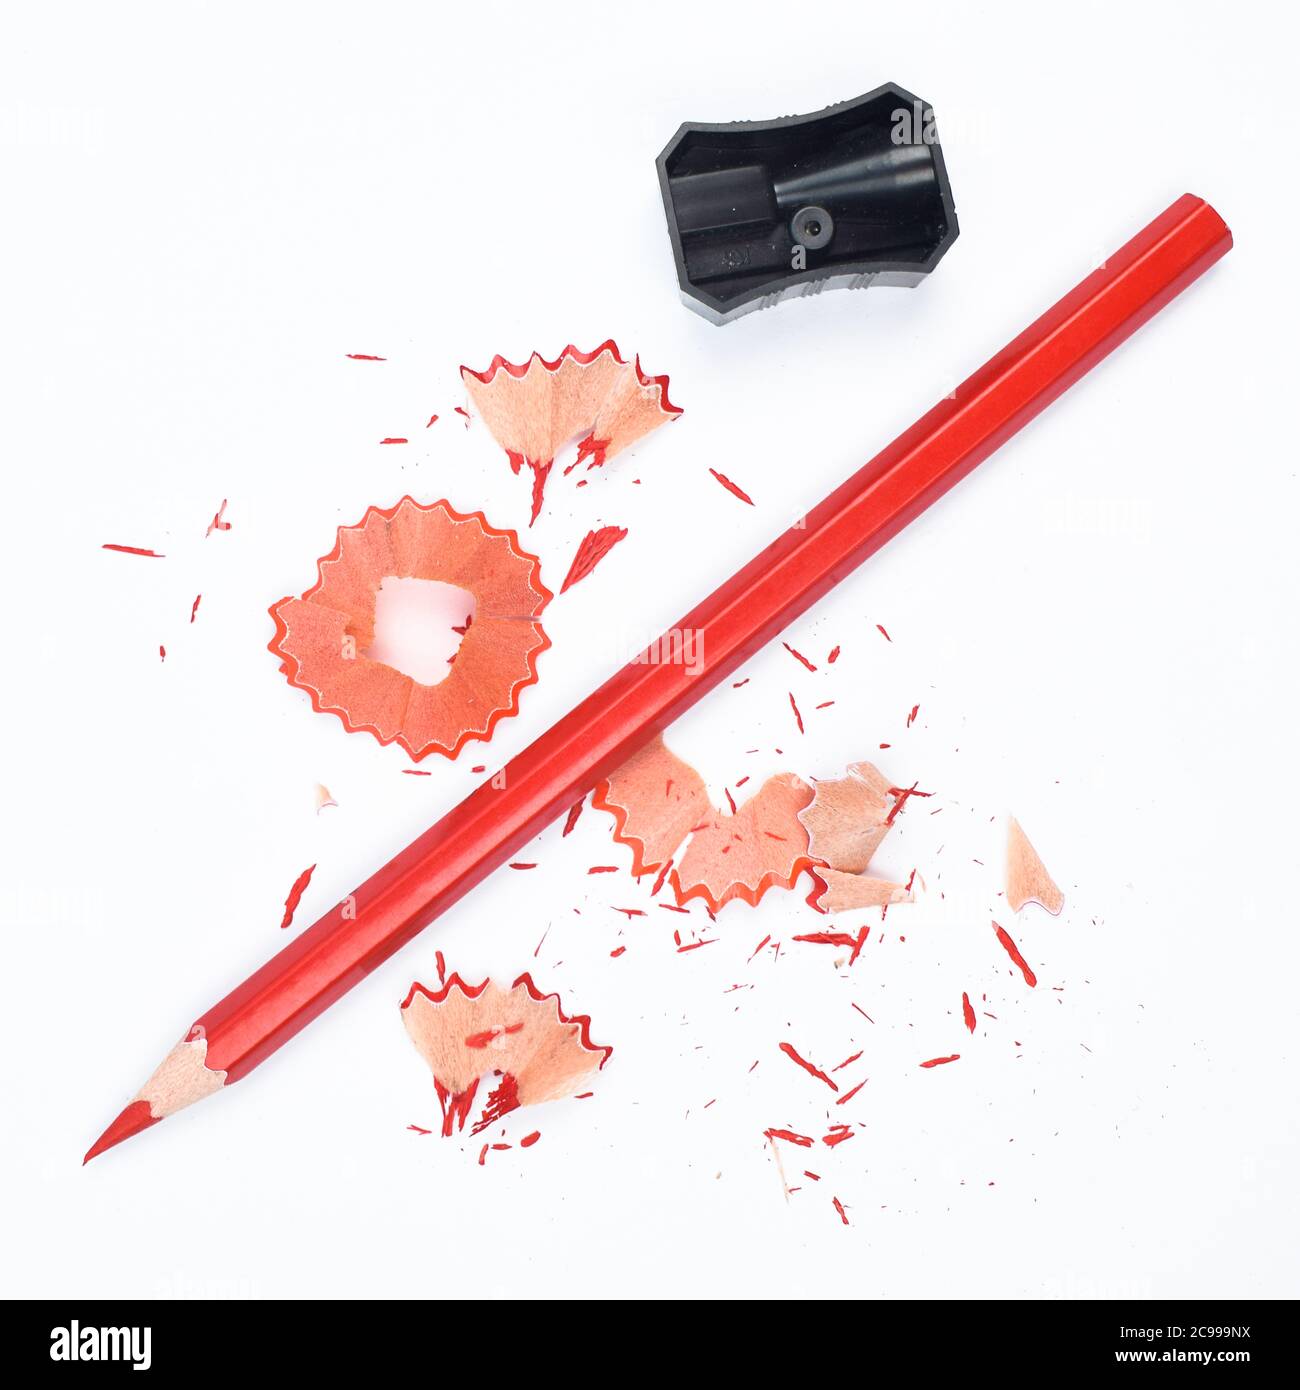 Materiali di studio contenenti una matita rossa e un singolo affilatore in plastica di colore nero Foto Stock